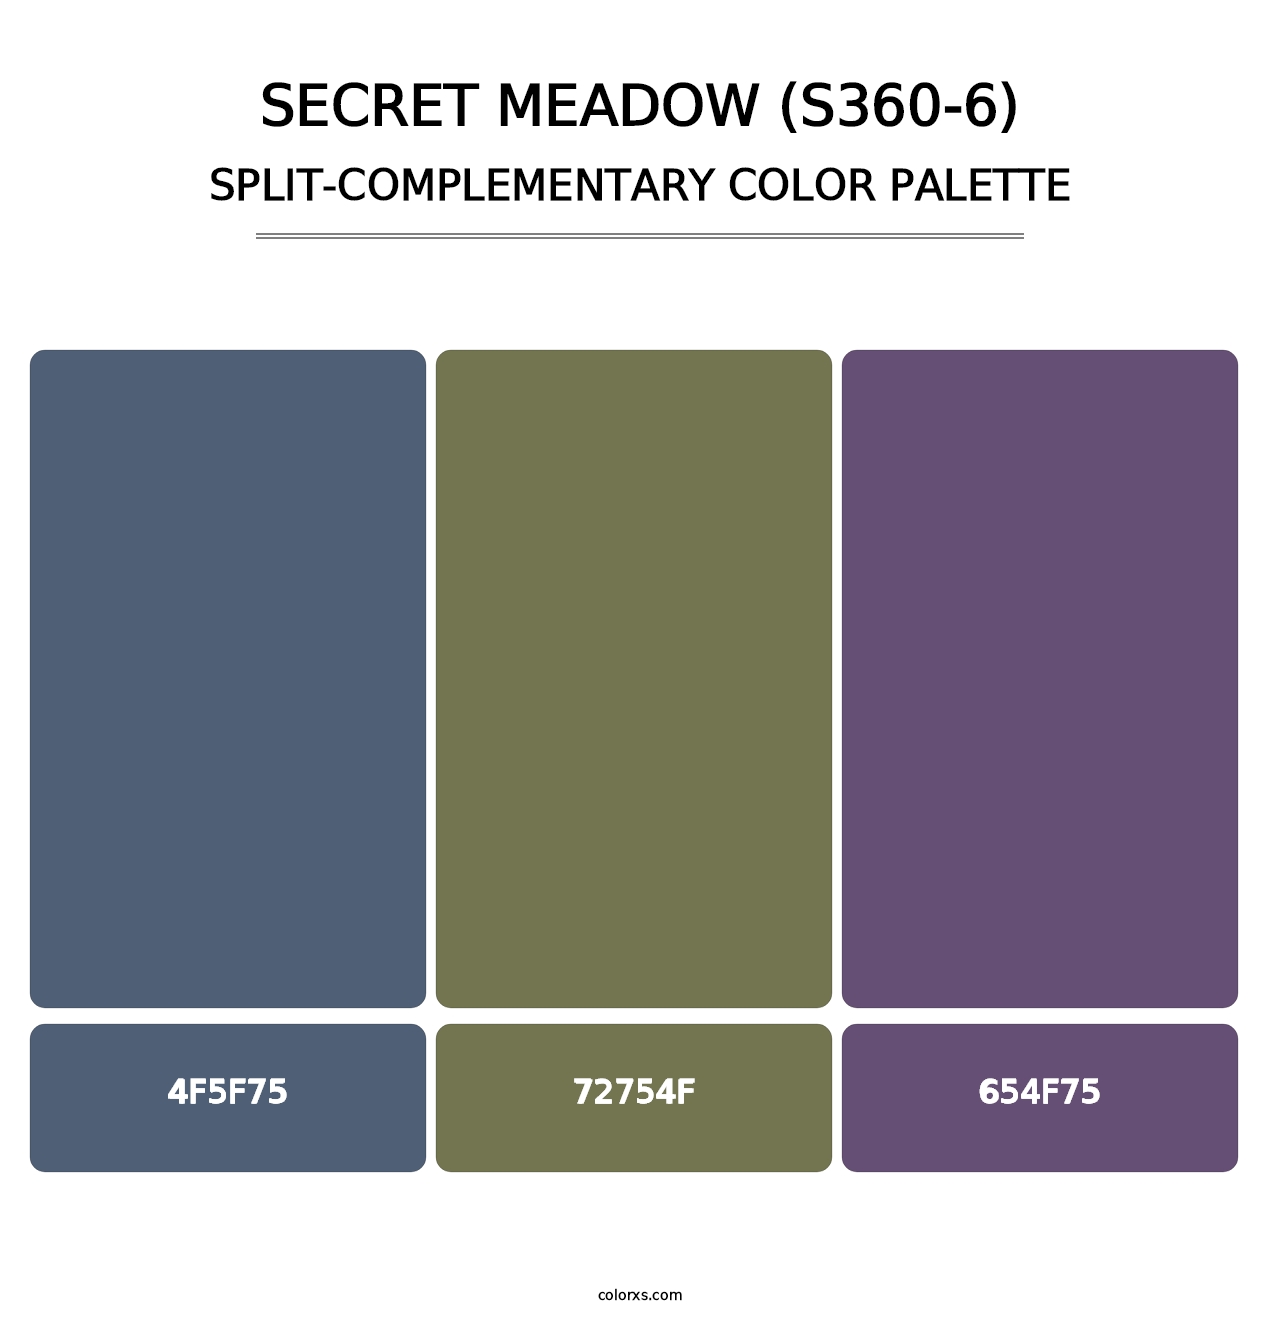 Secret Meadow (S360-6) - Split-Complementary Color Palette